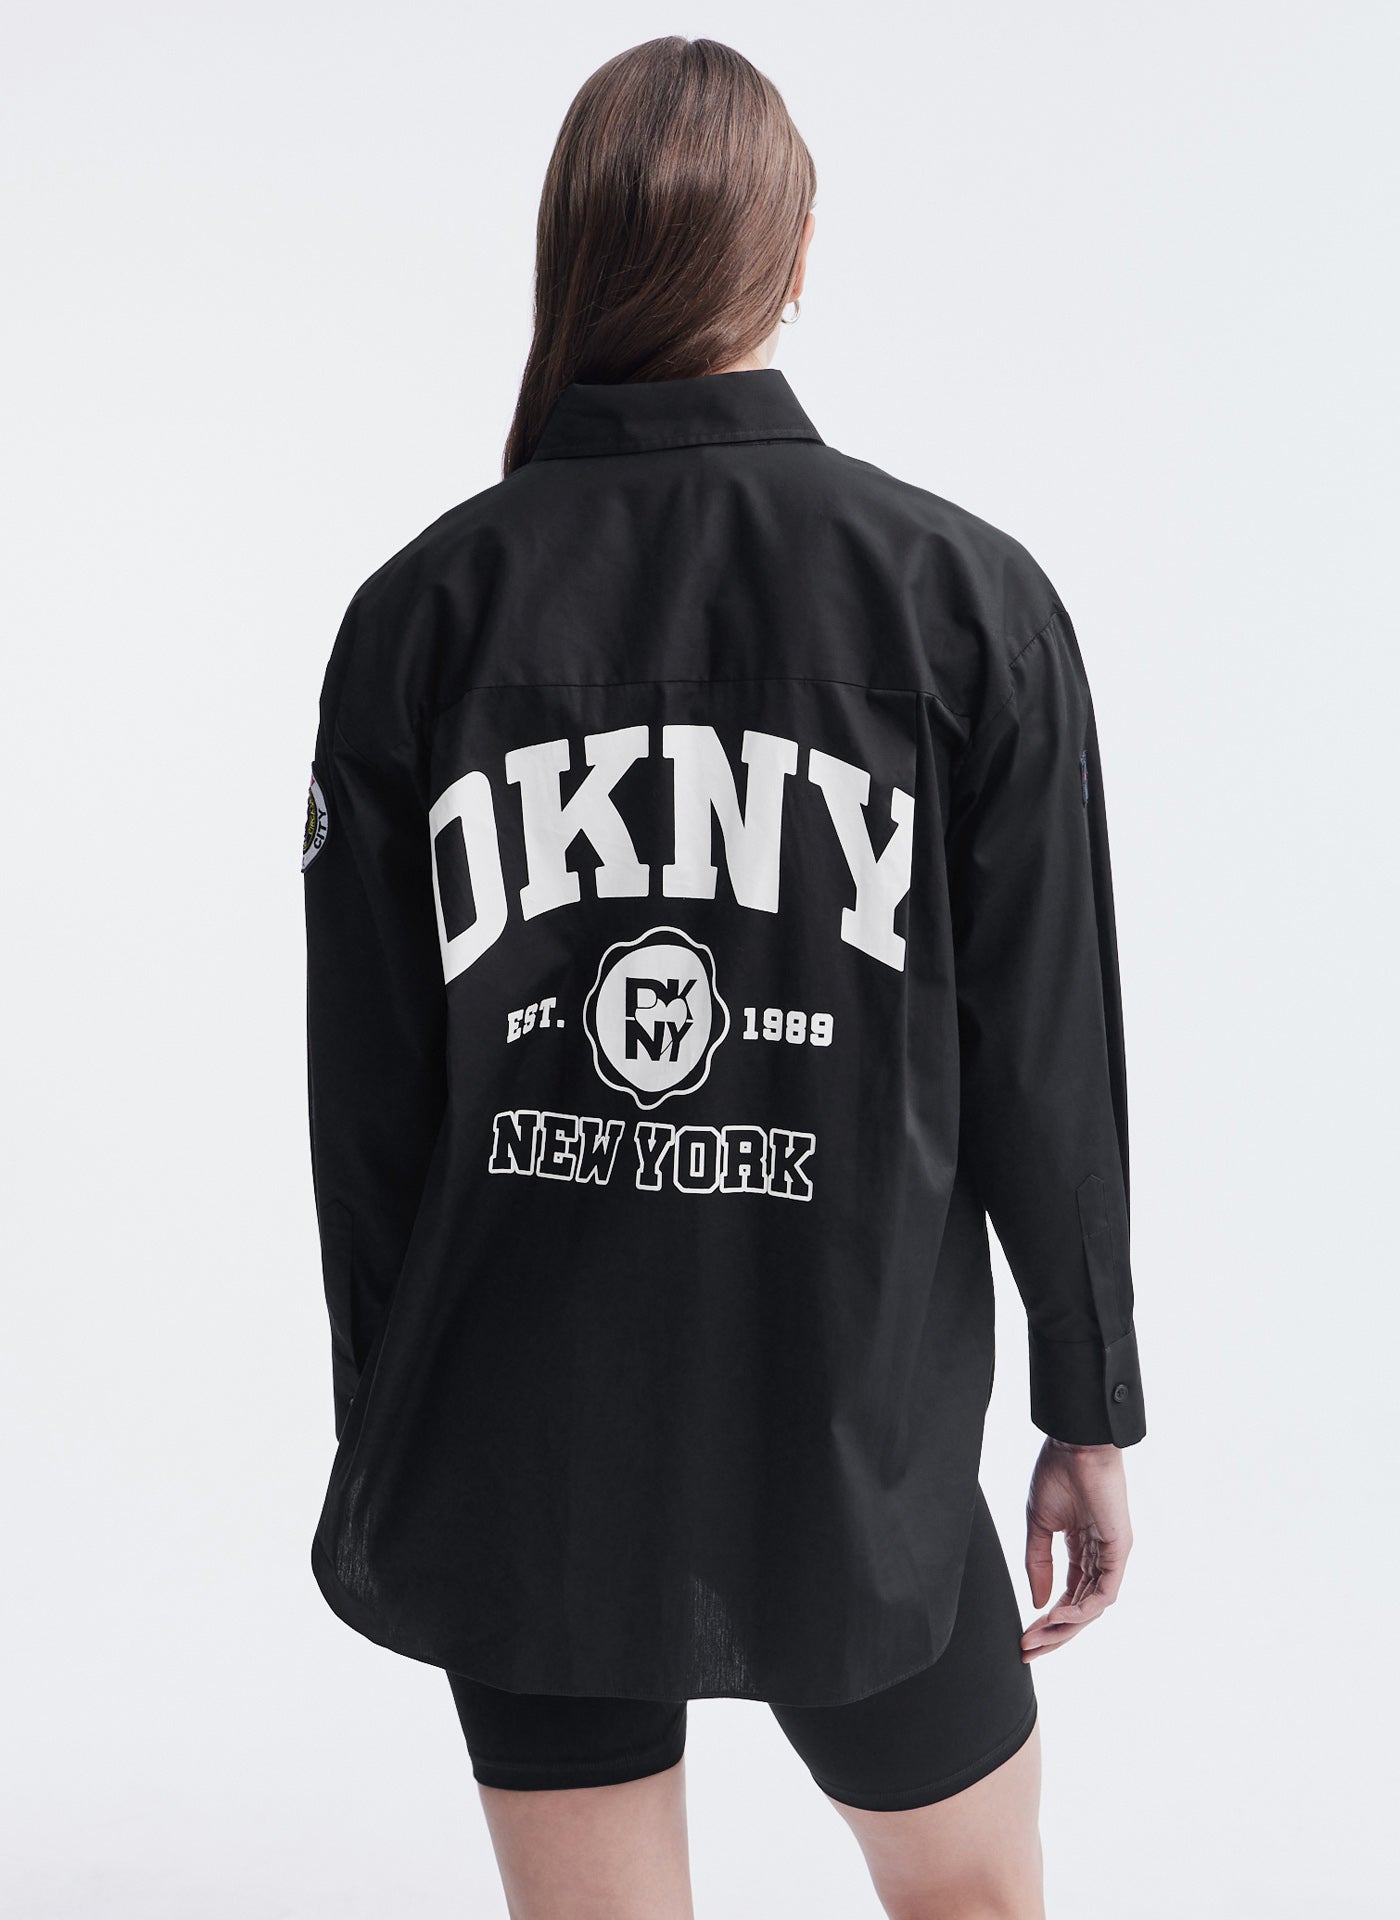 Camisa DKNY Jeans Original Abotoamento Bege Feminina